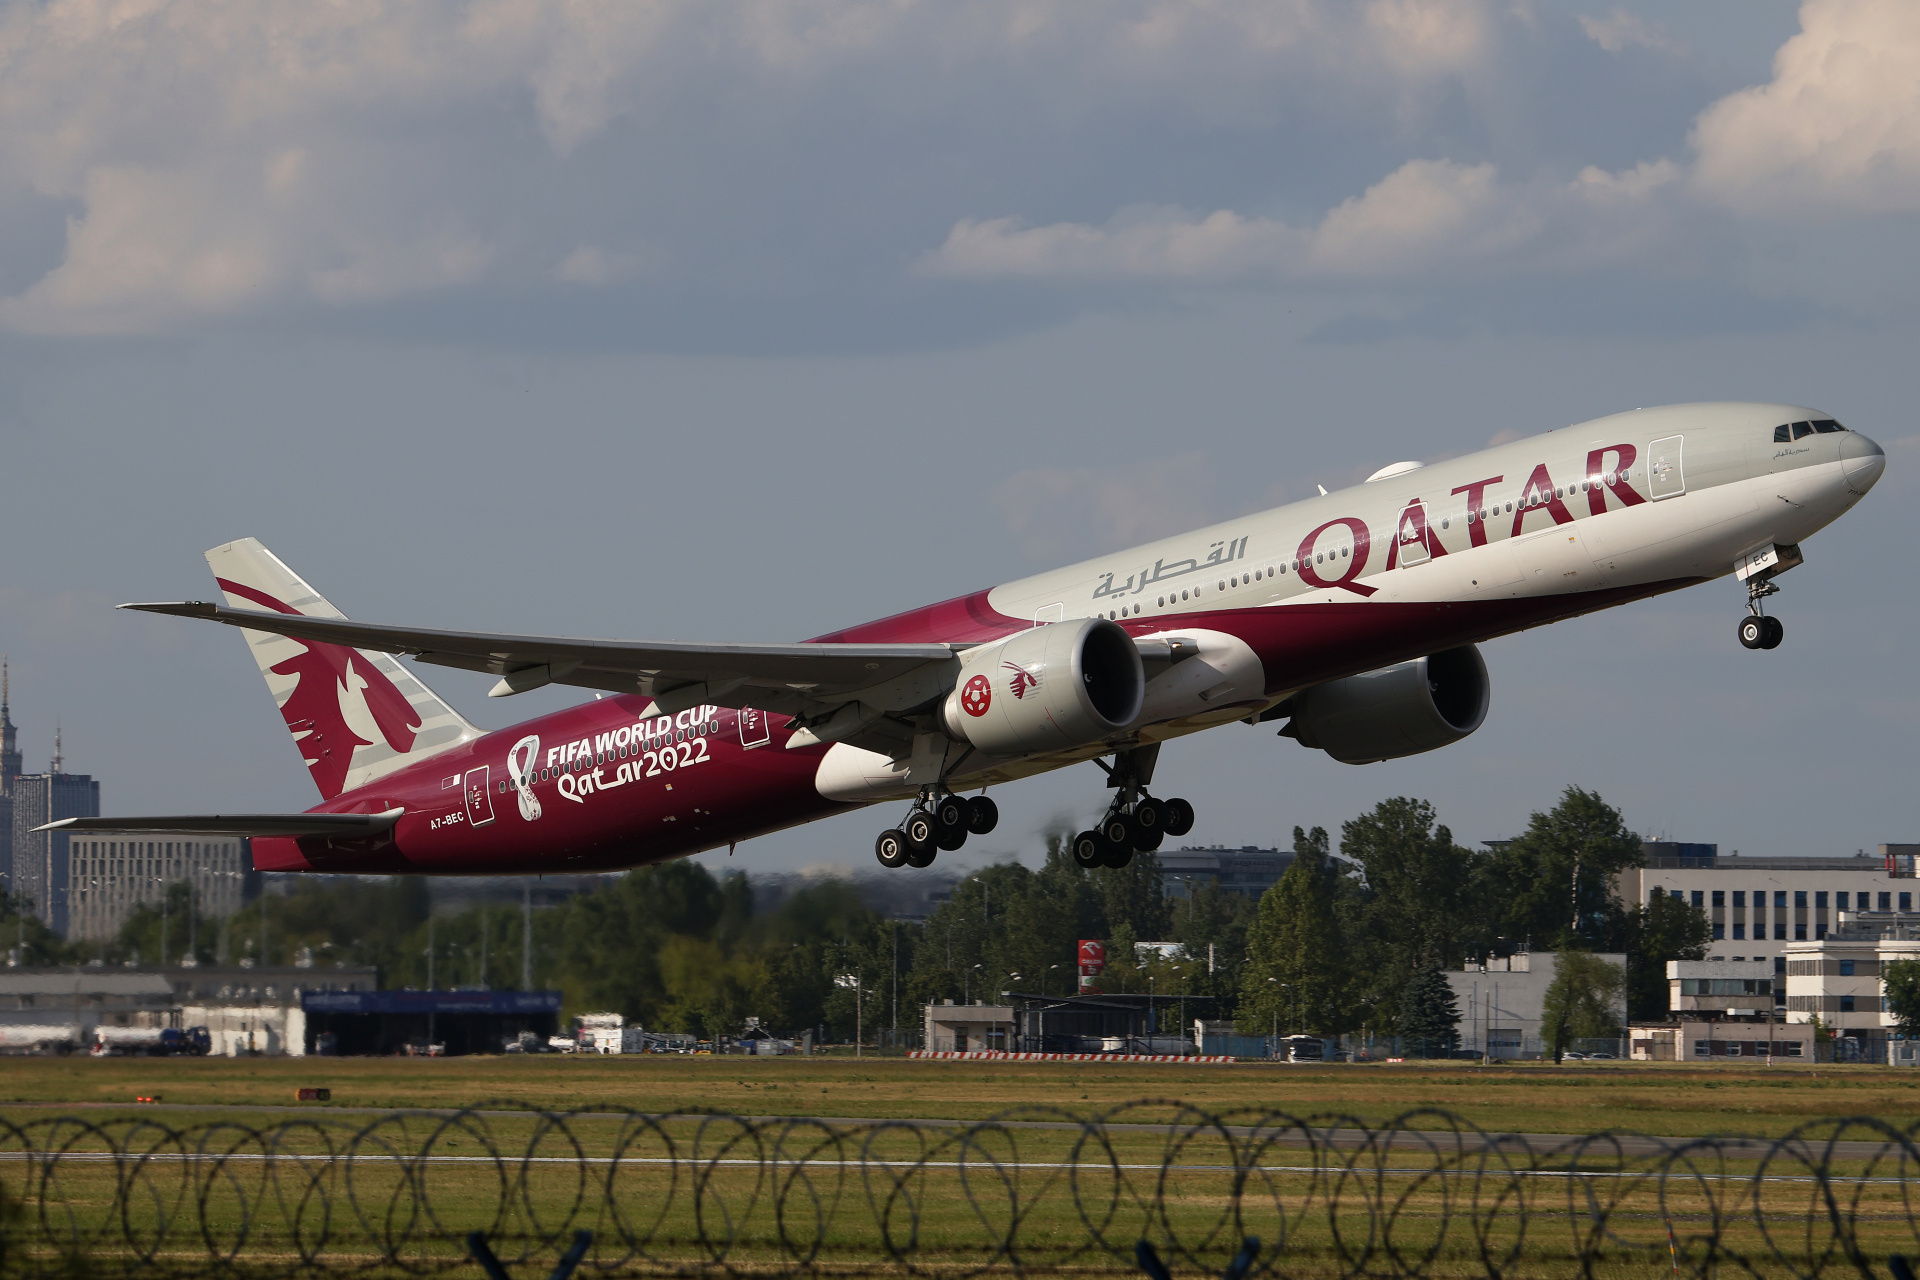 A7-BEC (FIFA World Cup Qatar 2022 livery) (Aircraft » EPWA Spotting » Boeing 777-300ER » Qatar Airways)